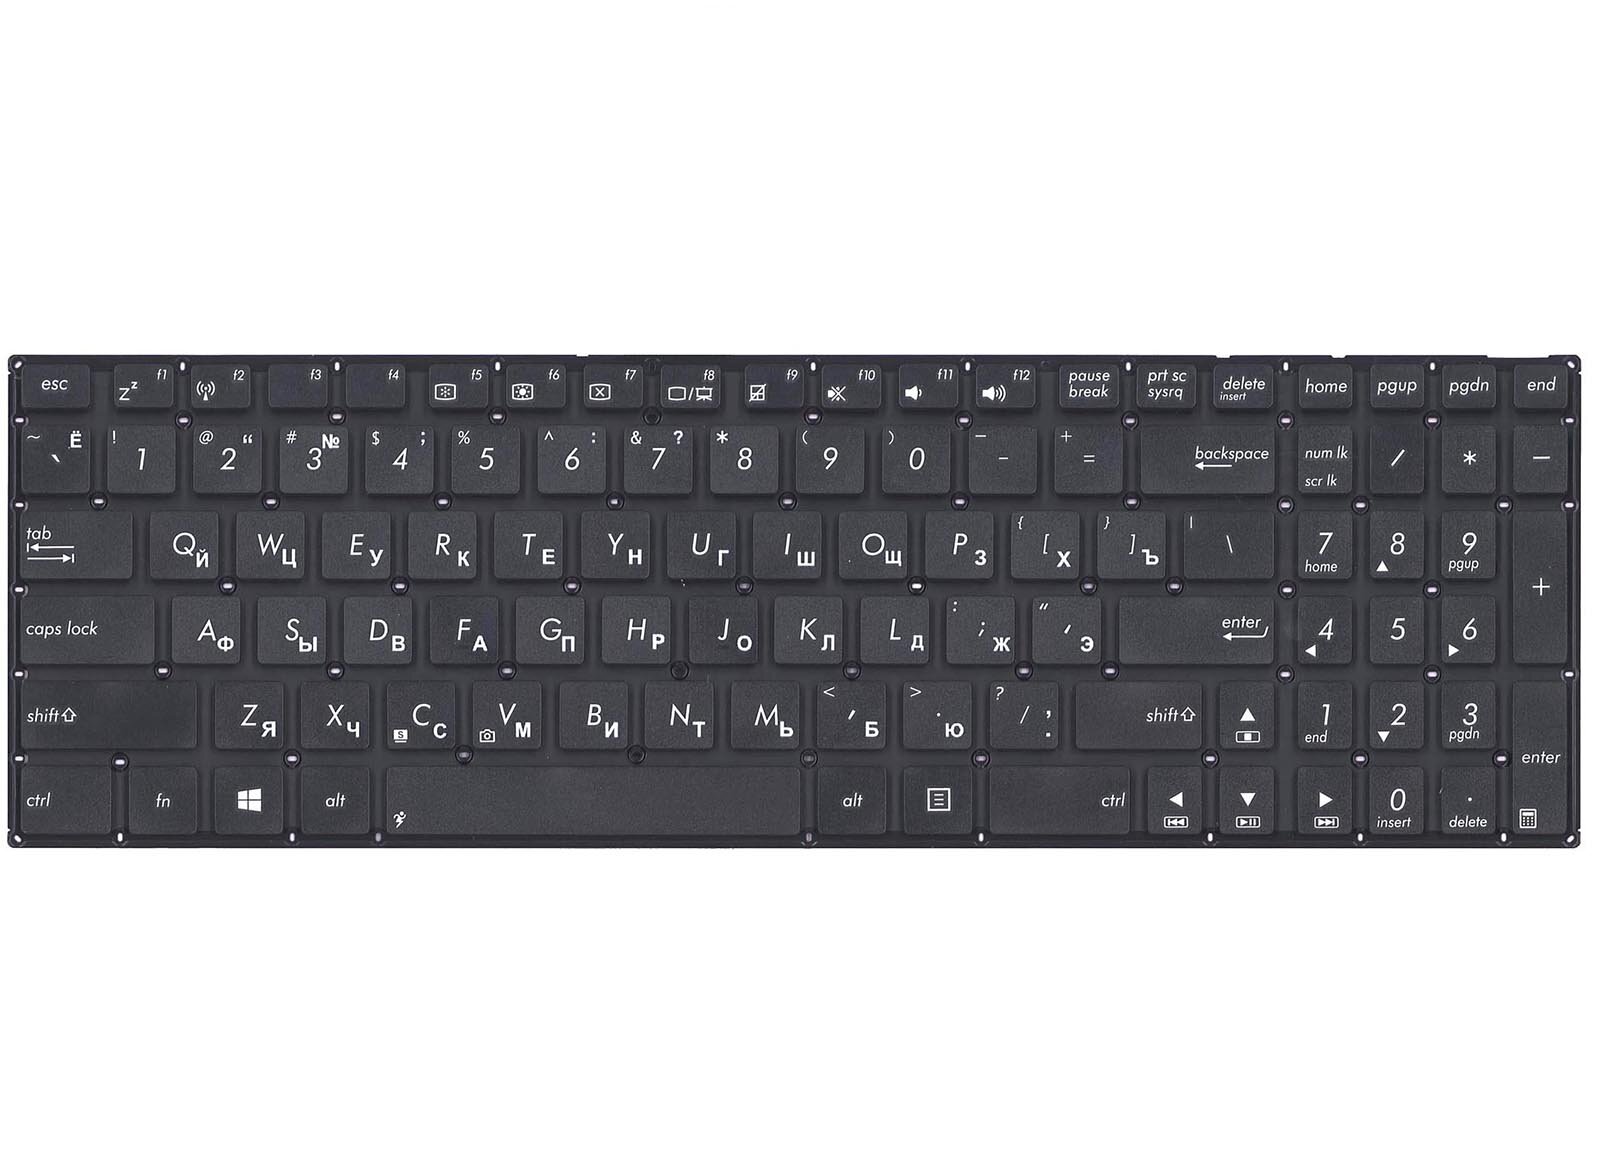 Клавиатура для ноутбука Asus X551C